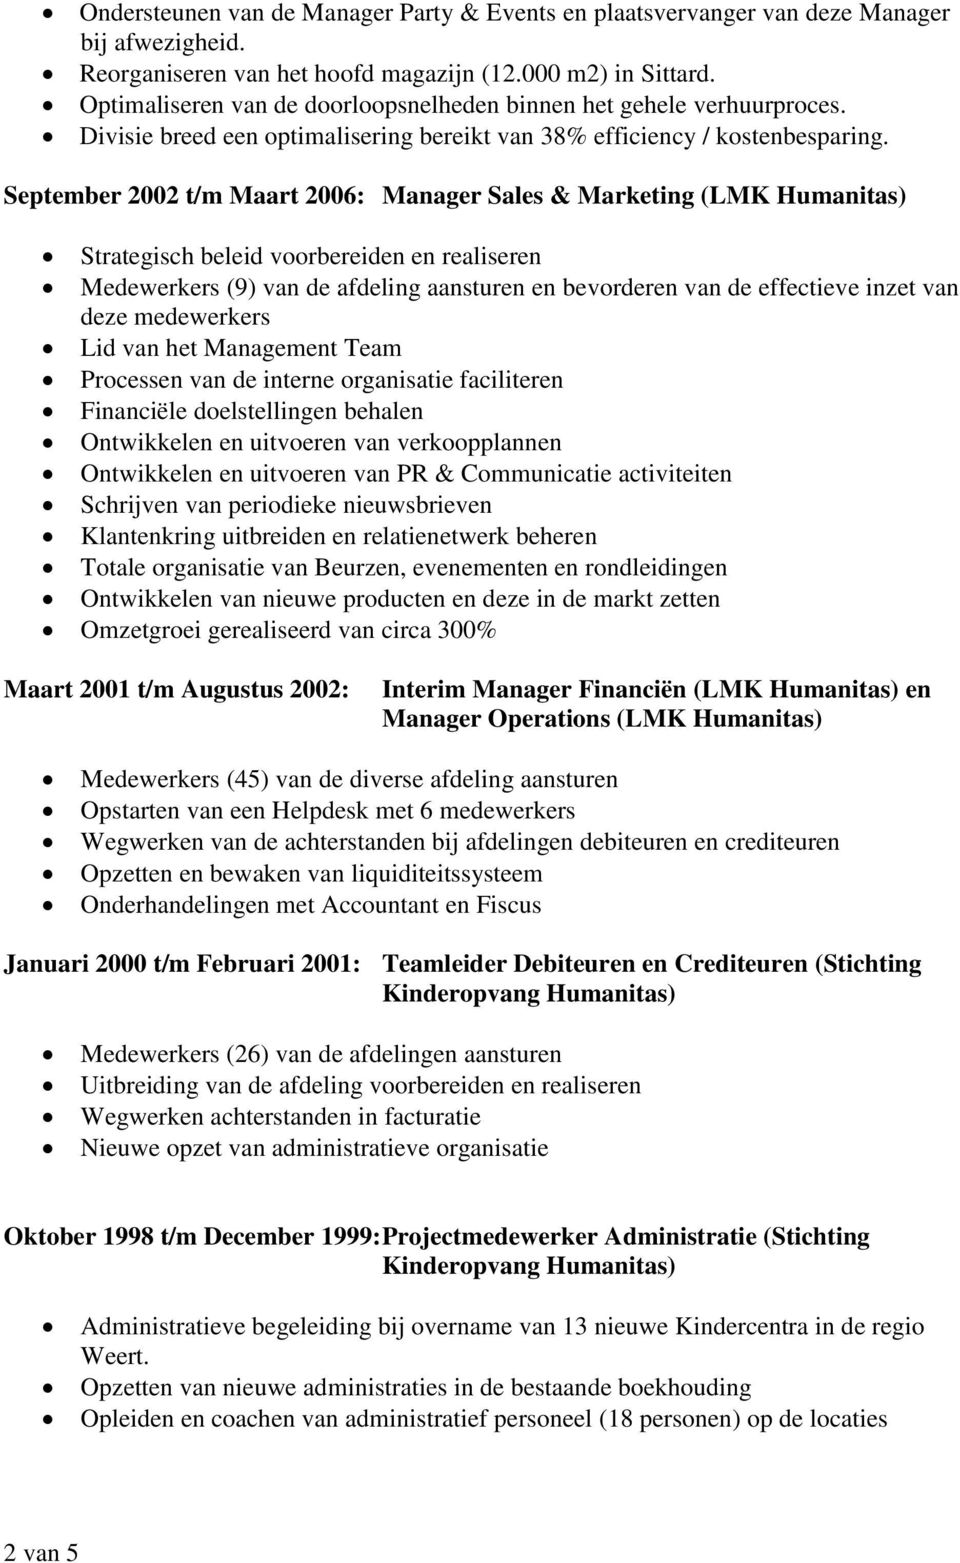 September 2002 t/m Maart 2006: Manager Sales & Marketing (LMK Humanitas) Strategisch beleid voorbereiden en realiseren Medewerkers (9) van de afdeling aansturen en bevorderen van de effectieve inzet